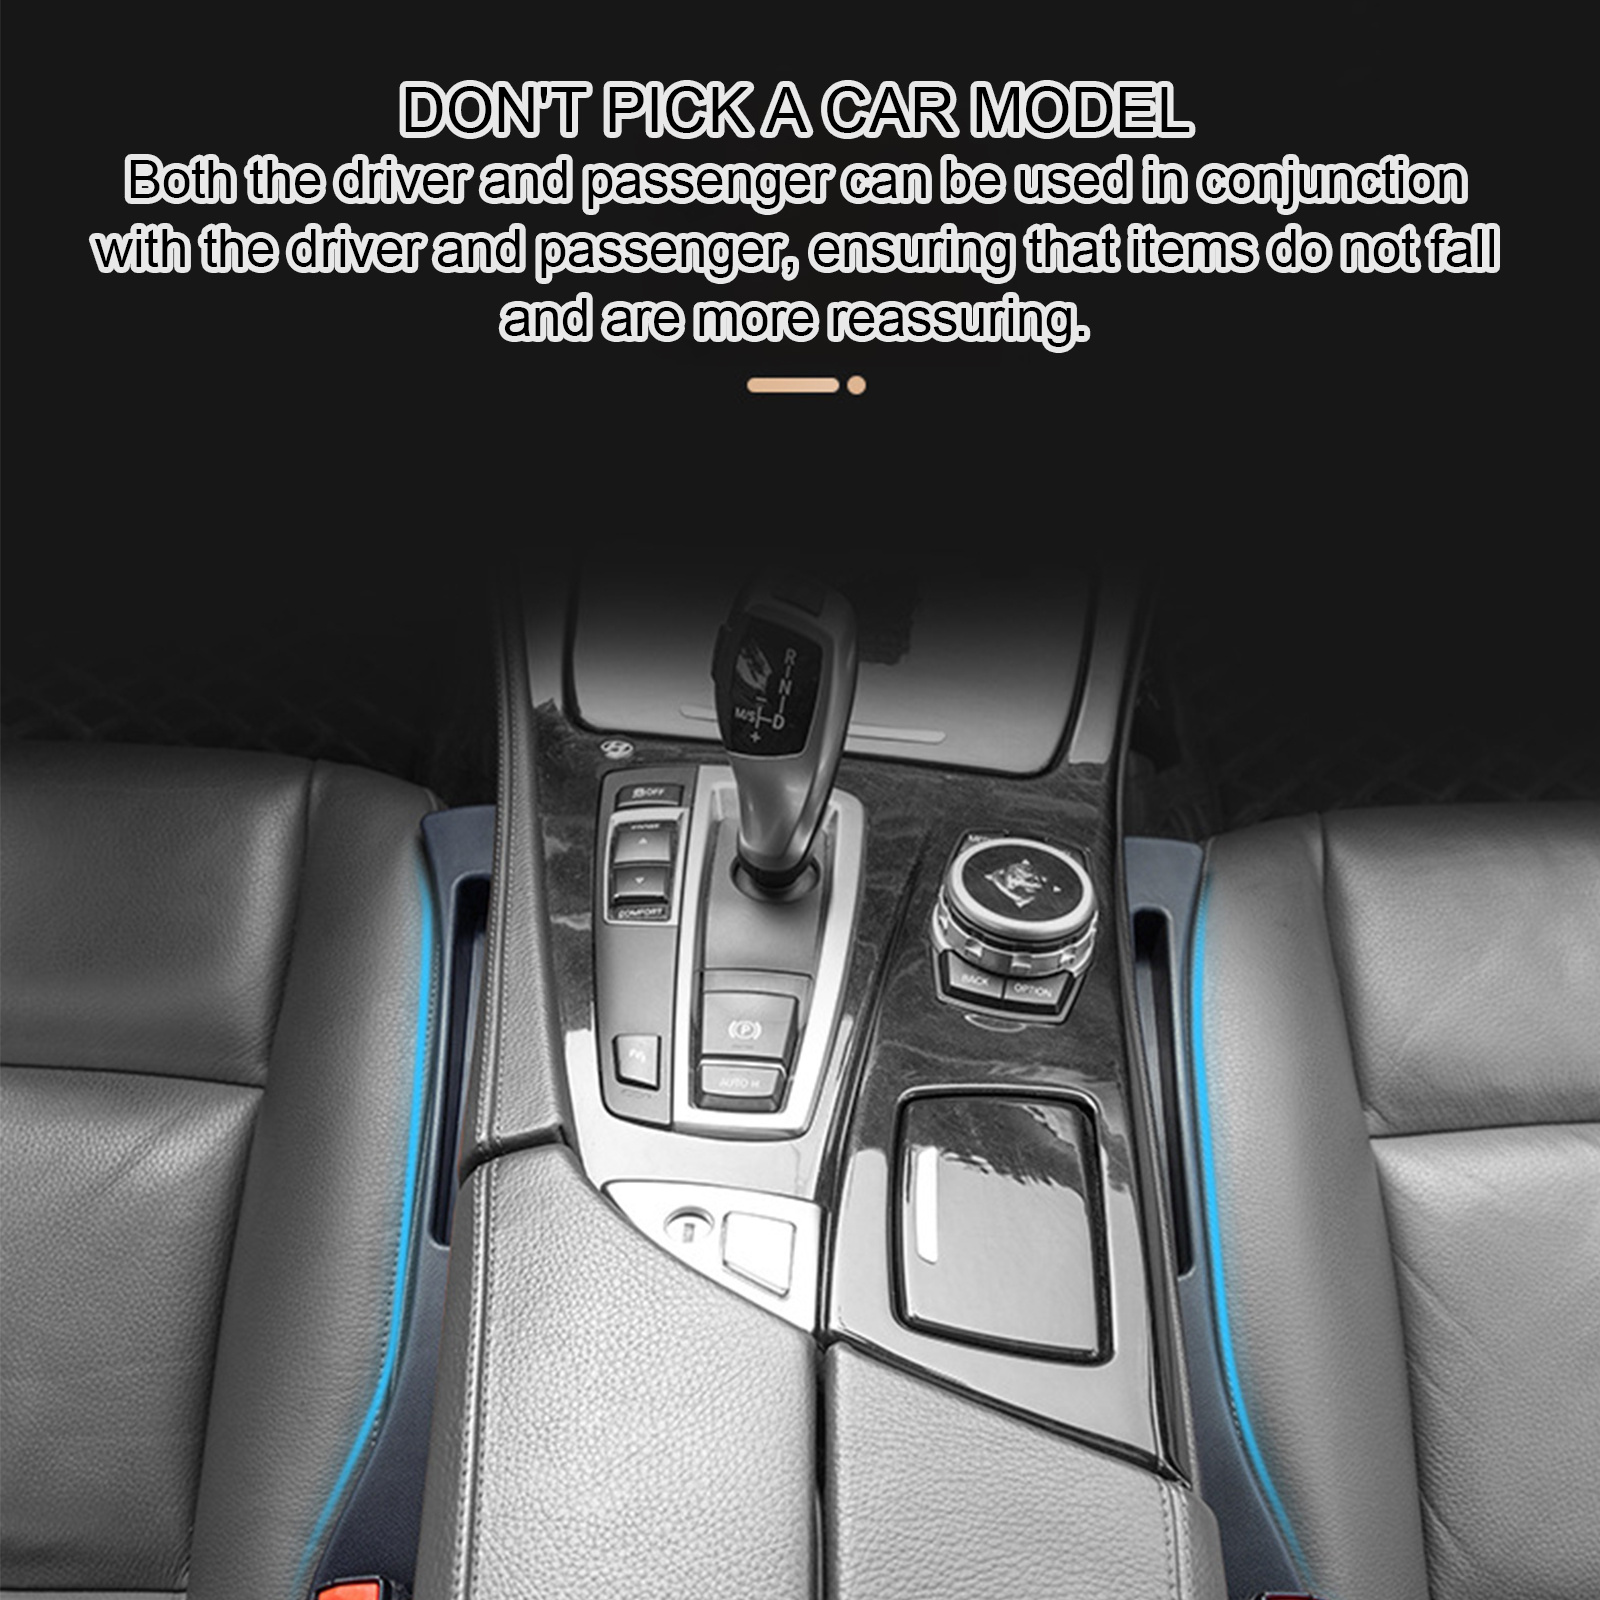 Kaufe 1 Paar Autositz-Lückenfüller, universell, stoppt das Herunterfallen  von Gegenständen, schützt den Innenraum, weiche, wasserdichte  Kunstleder-Steckerstreifen